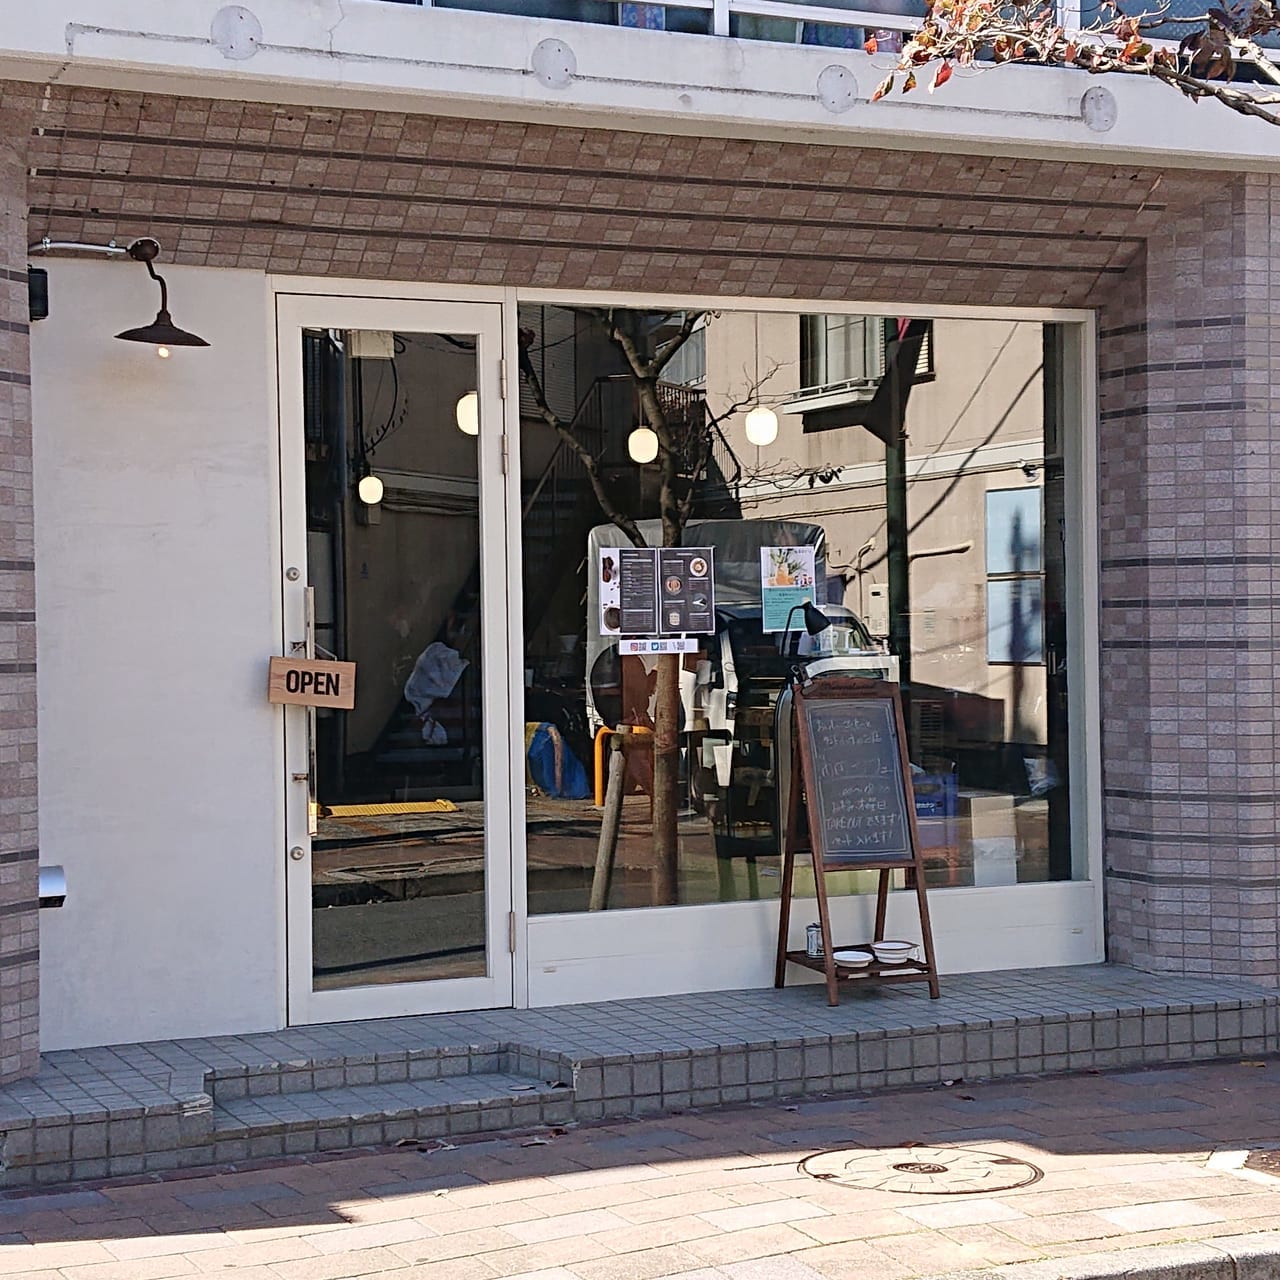 大田区 美味しい珈琲が飲めるおしゃれなカフェその名も 蒲田カフェ が蒲田駅西口徒歩5分にプレオープン中です 号外net 大田区